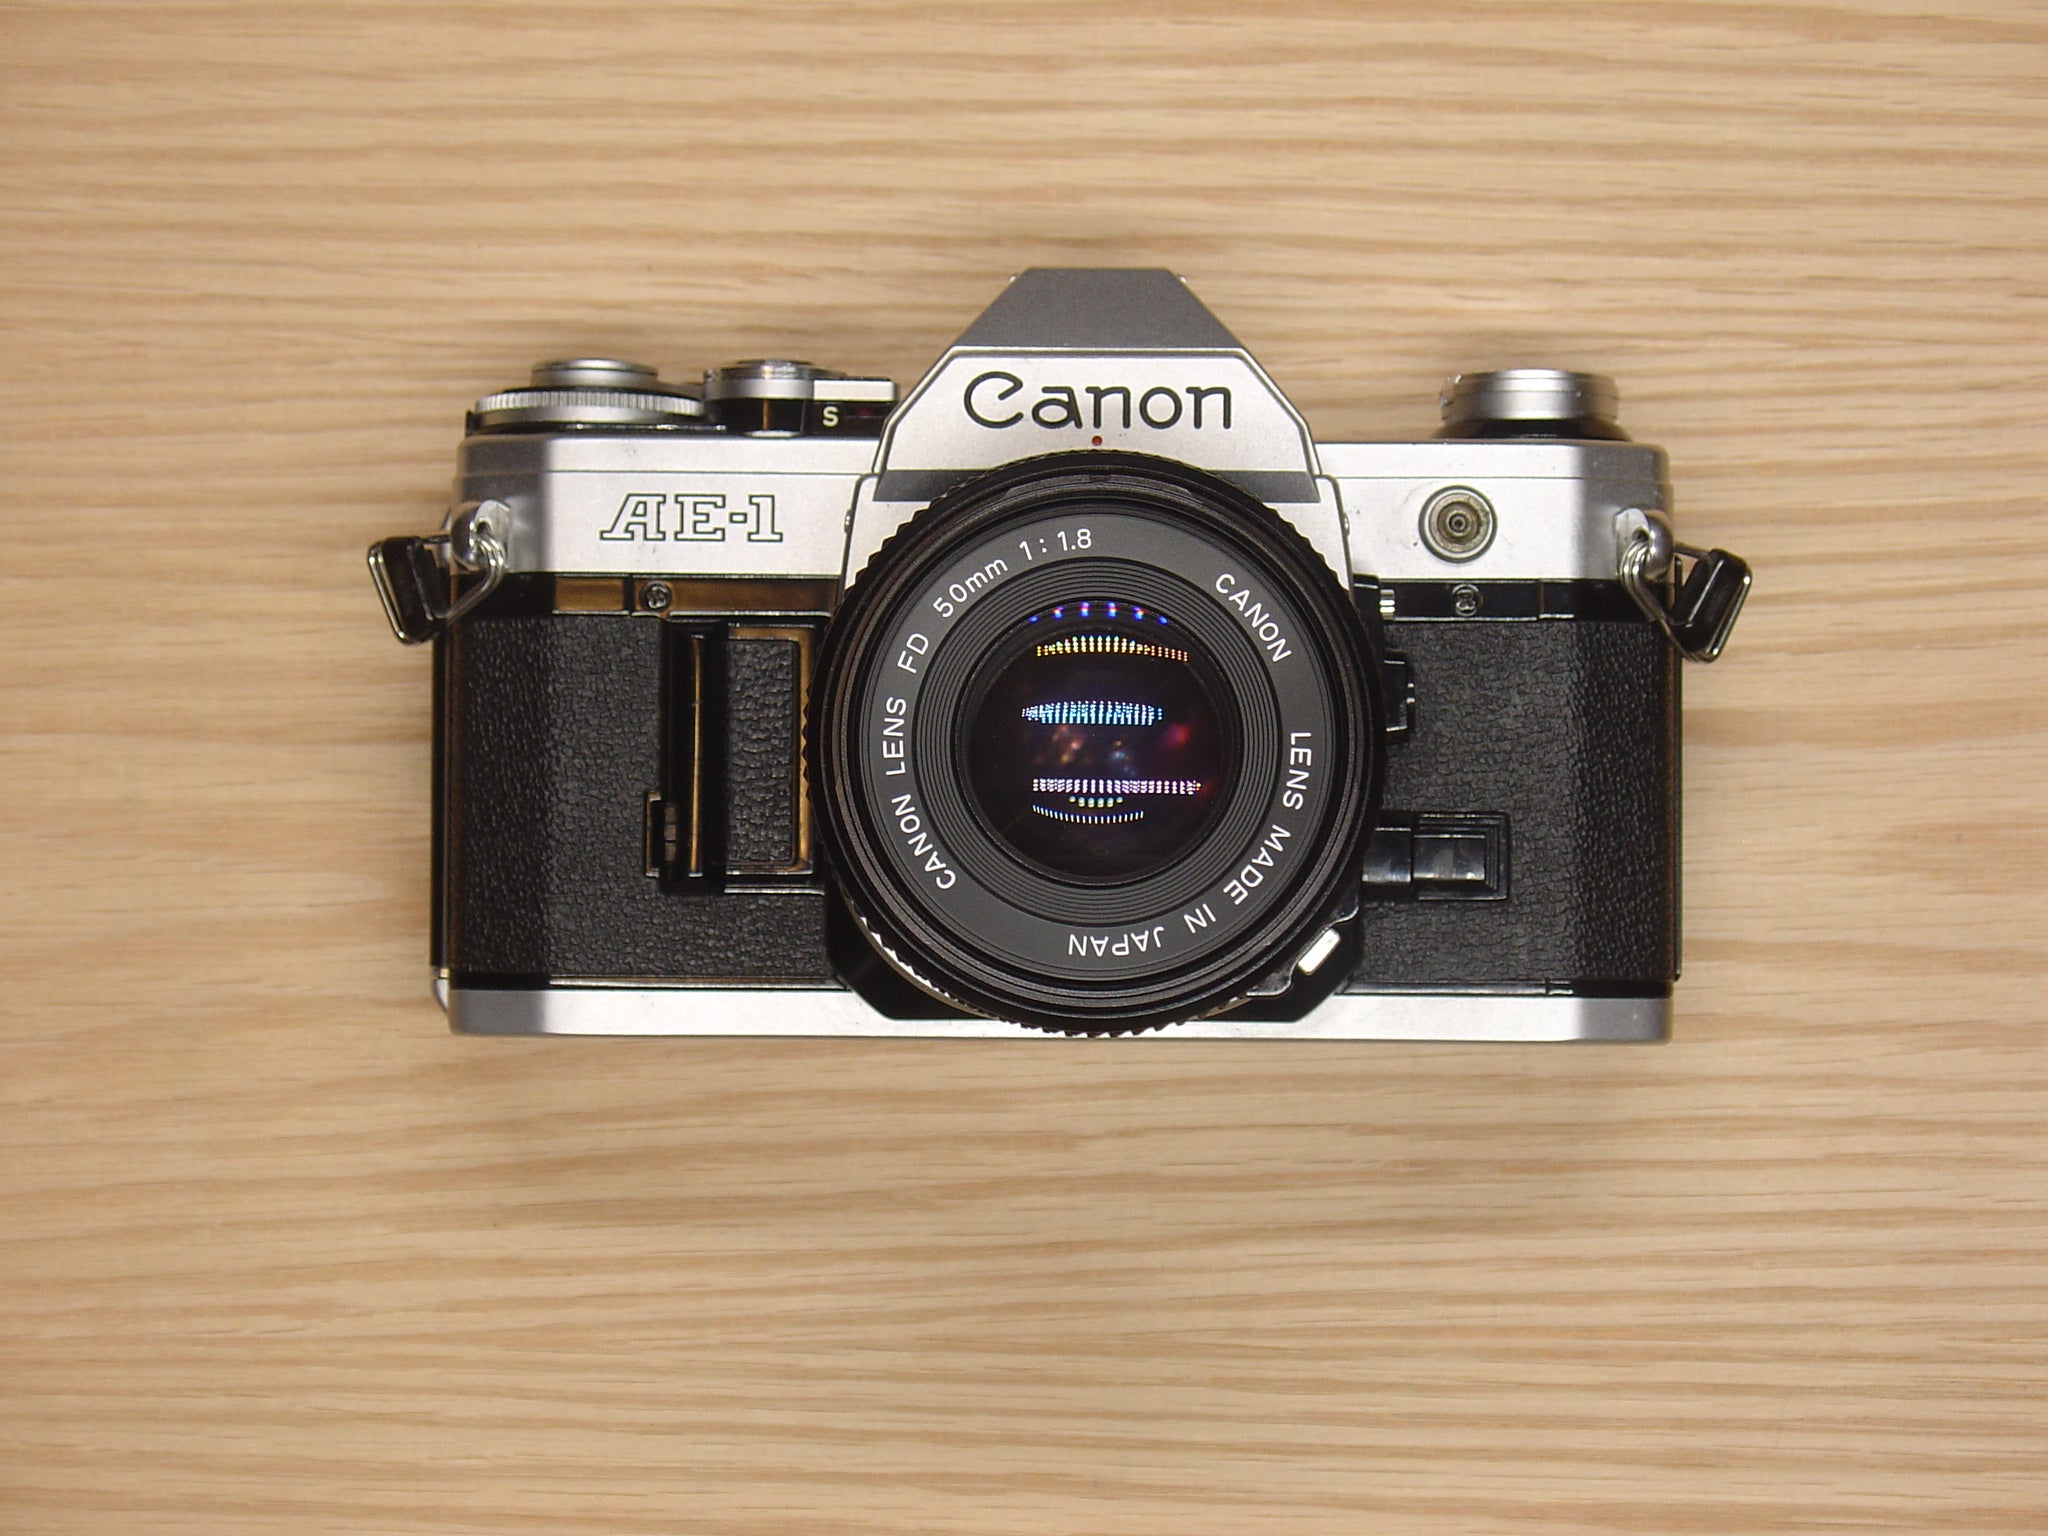 Canon AE-1 - フィルムカメラ